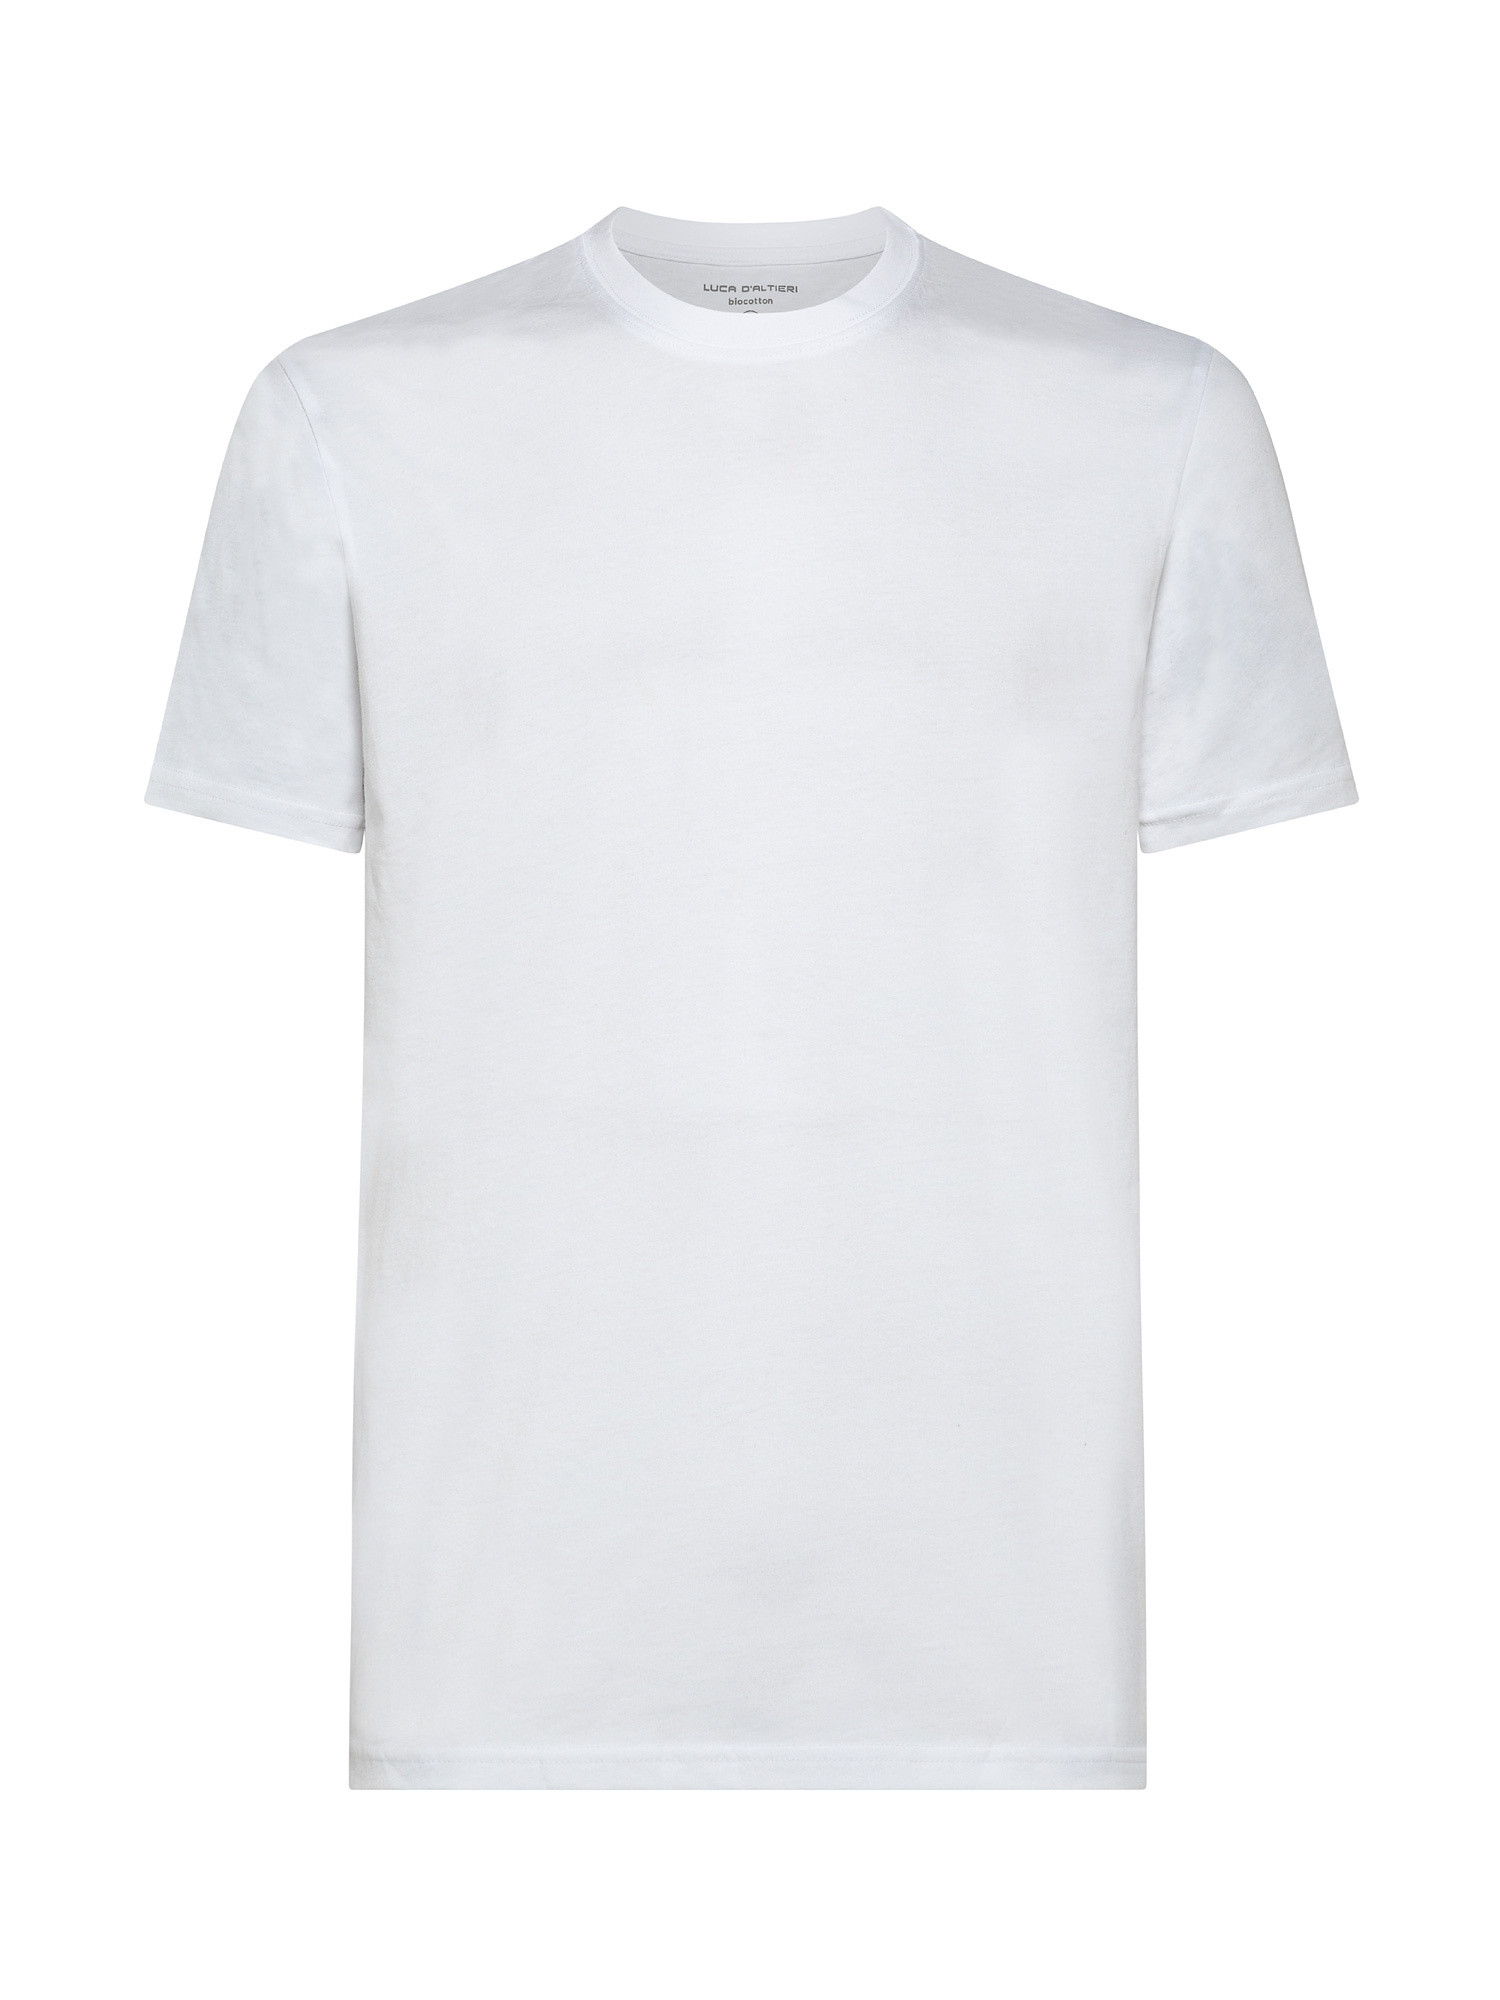 Set 3 t-shirt girocollo jersey tinta unita, Bianco, large image number 0